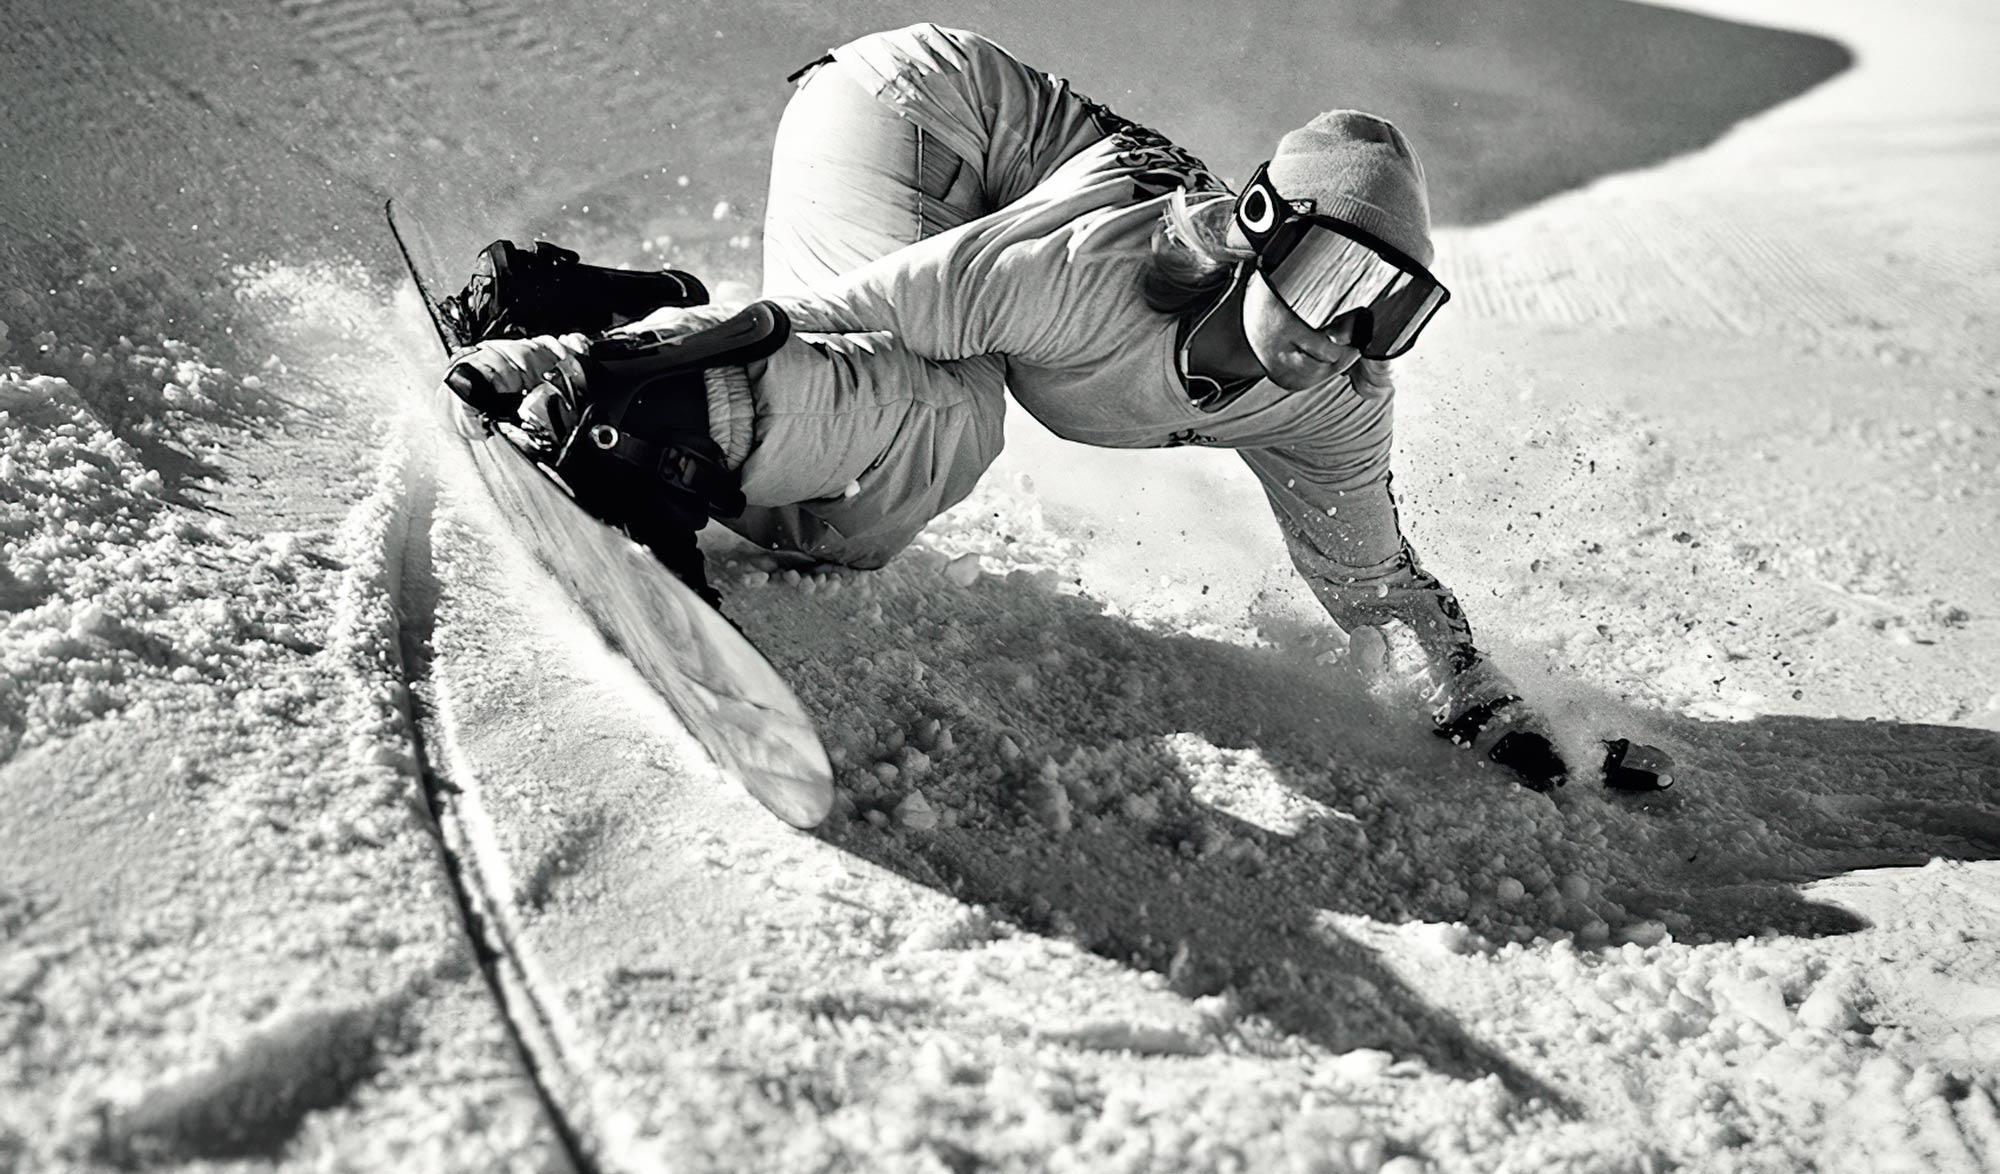 Snowboard femme, Achat Snowboard femme :  - Grenoble